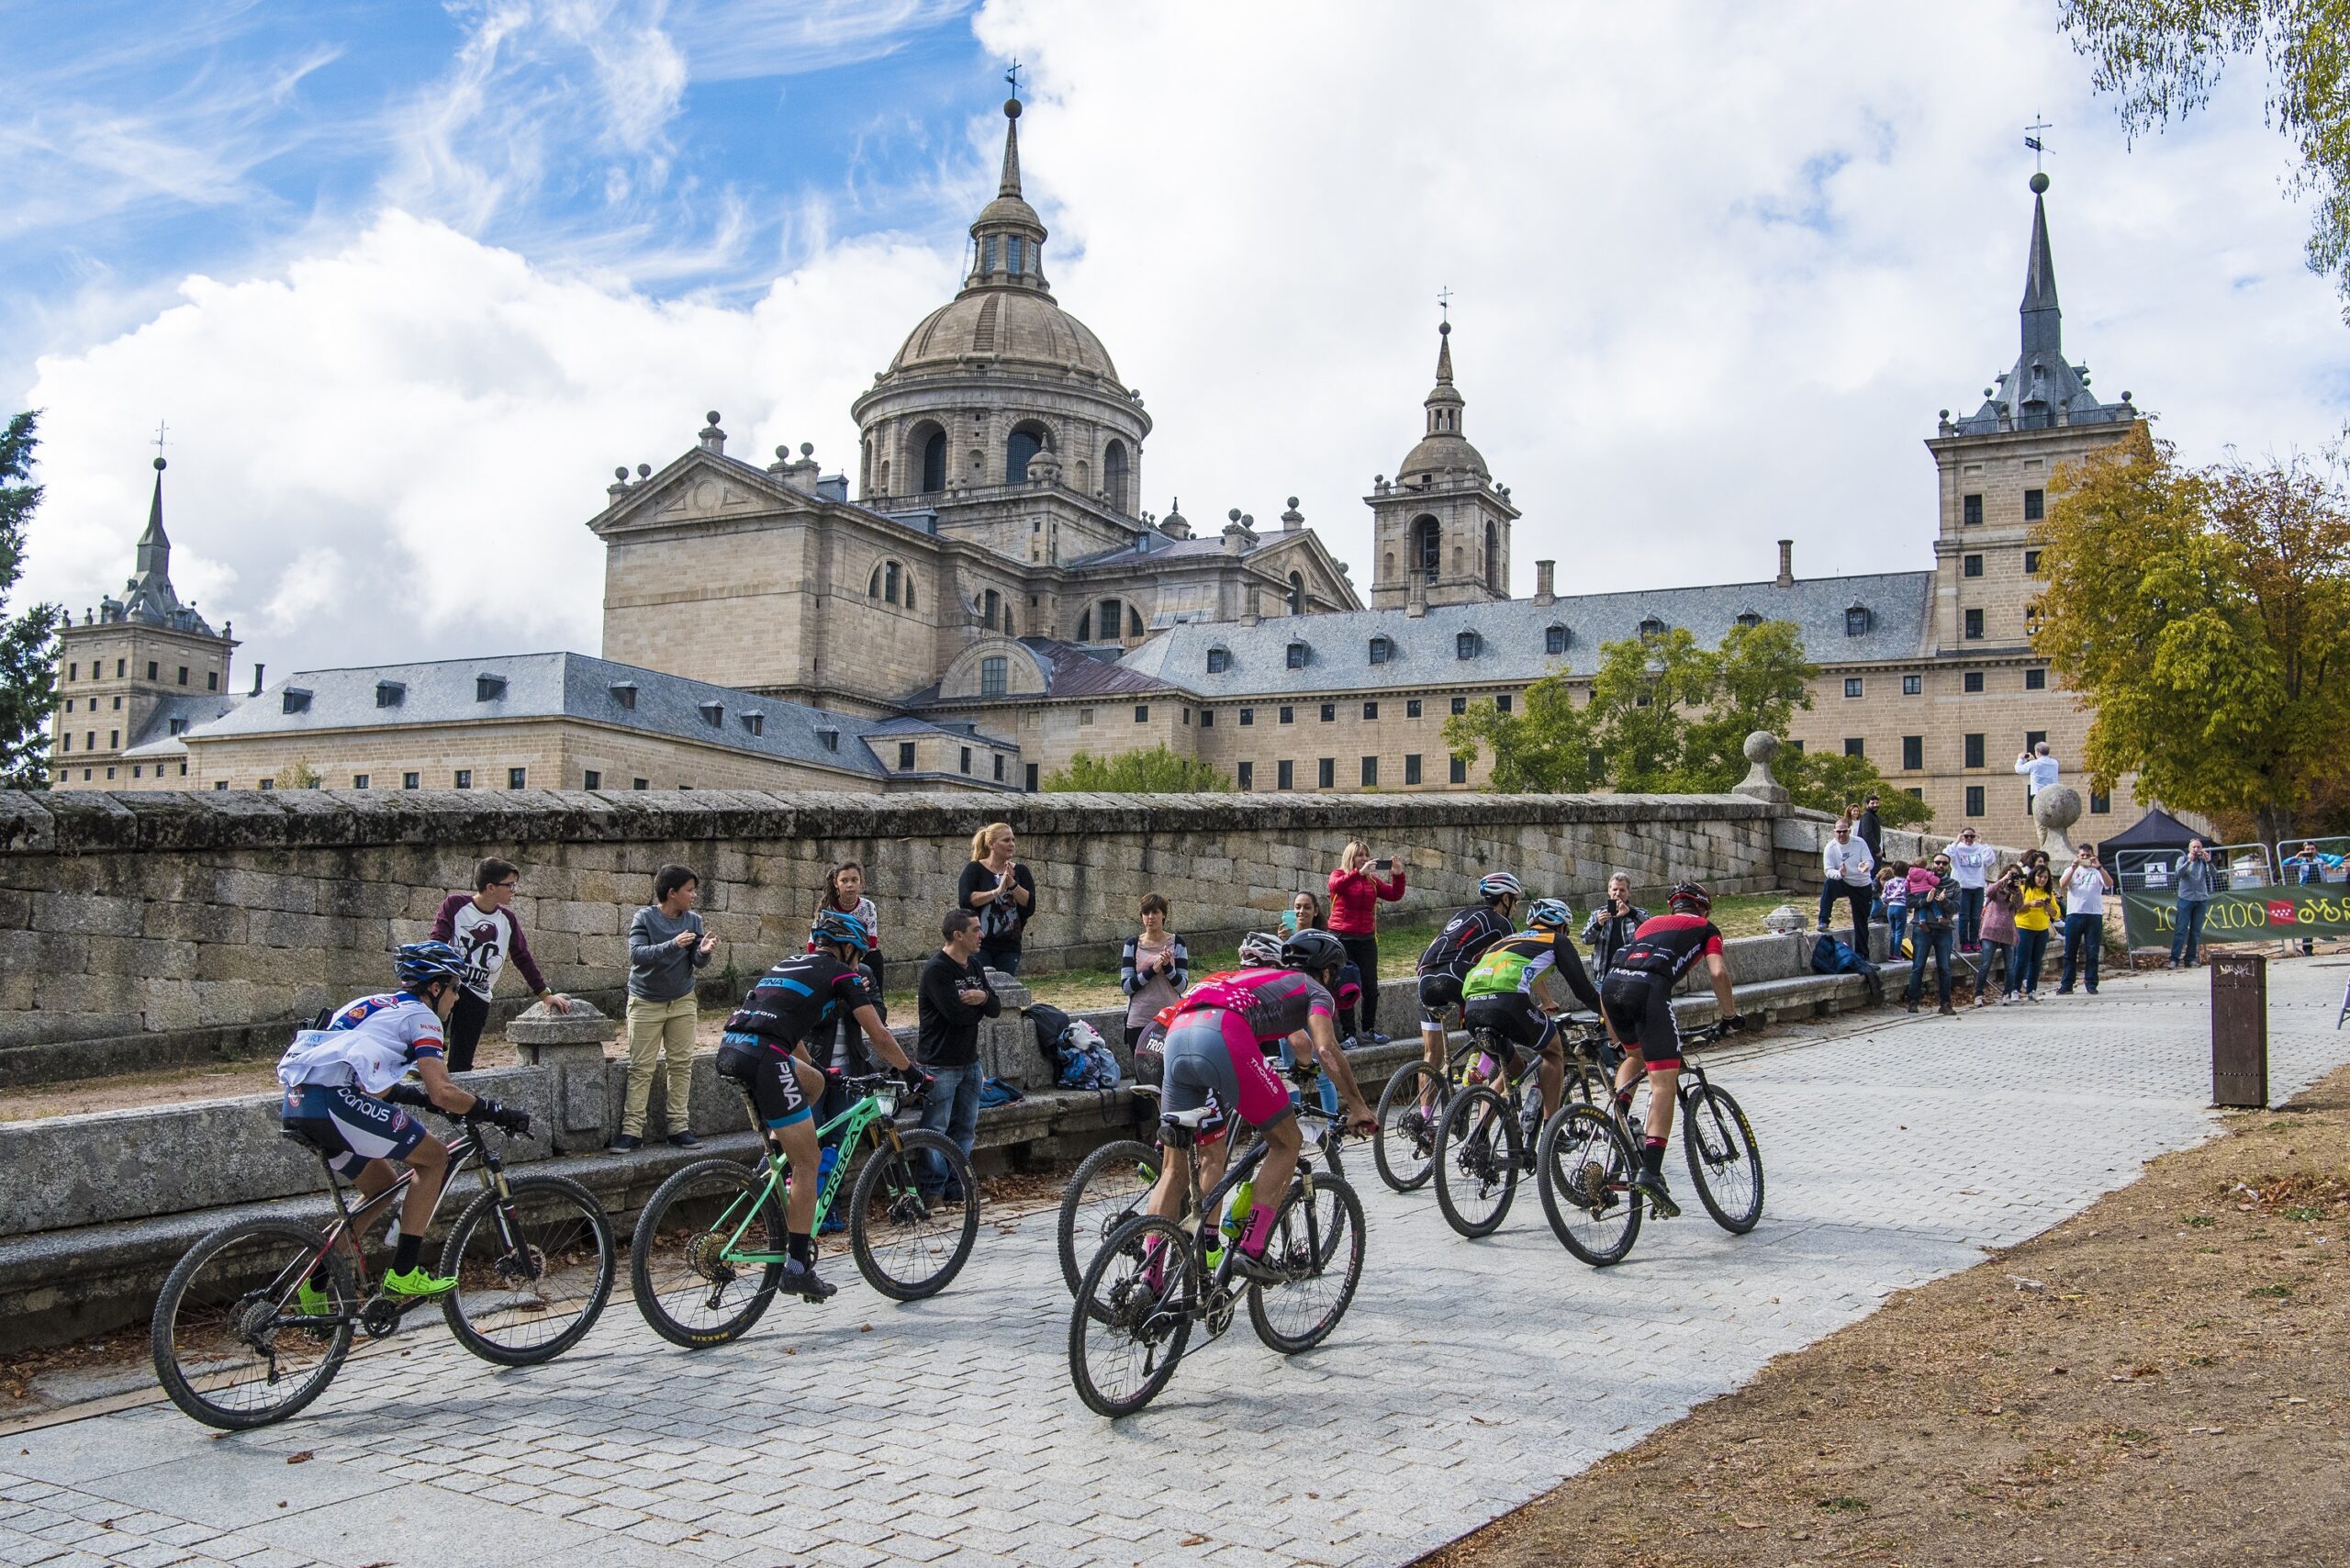 El cicloturismo: una forma de turismo que promueve la economía local